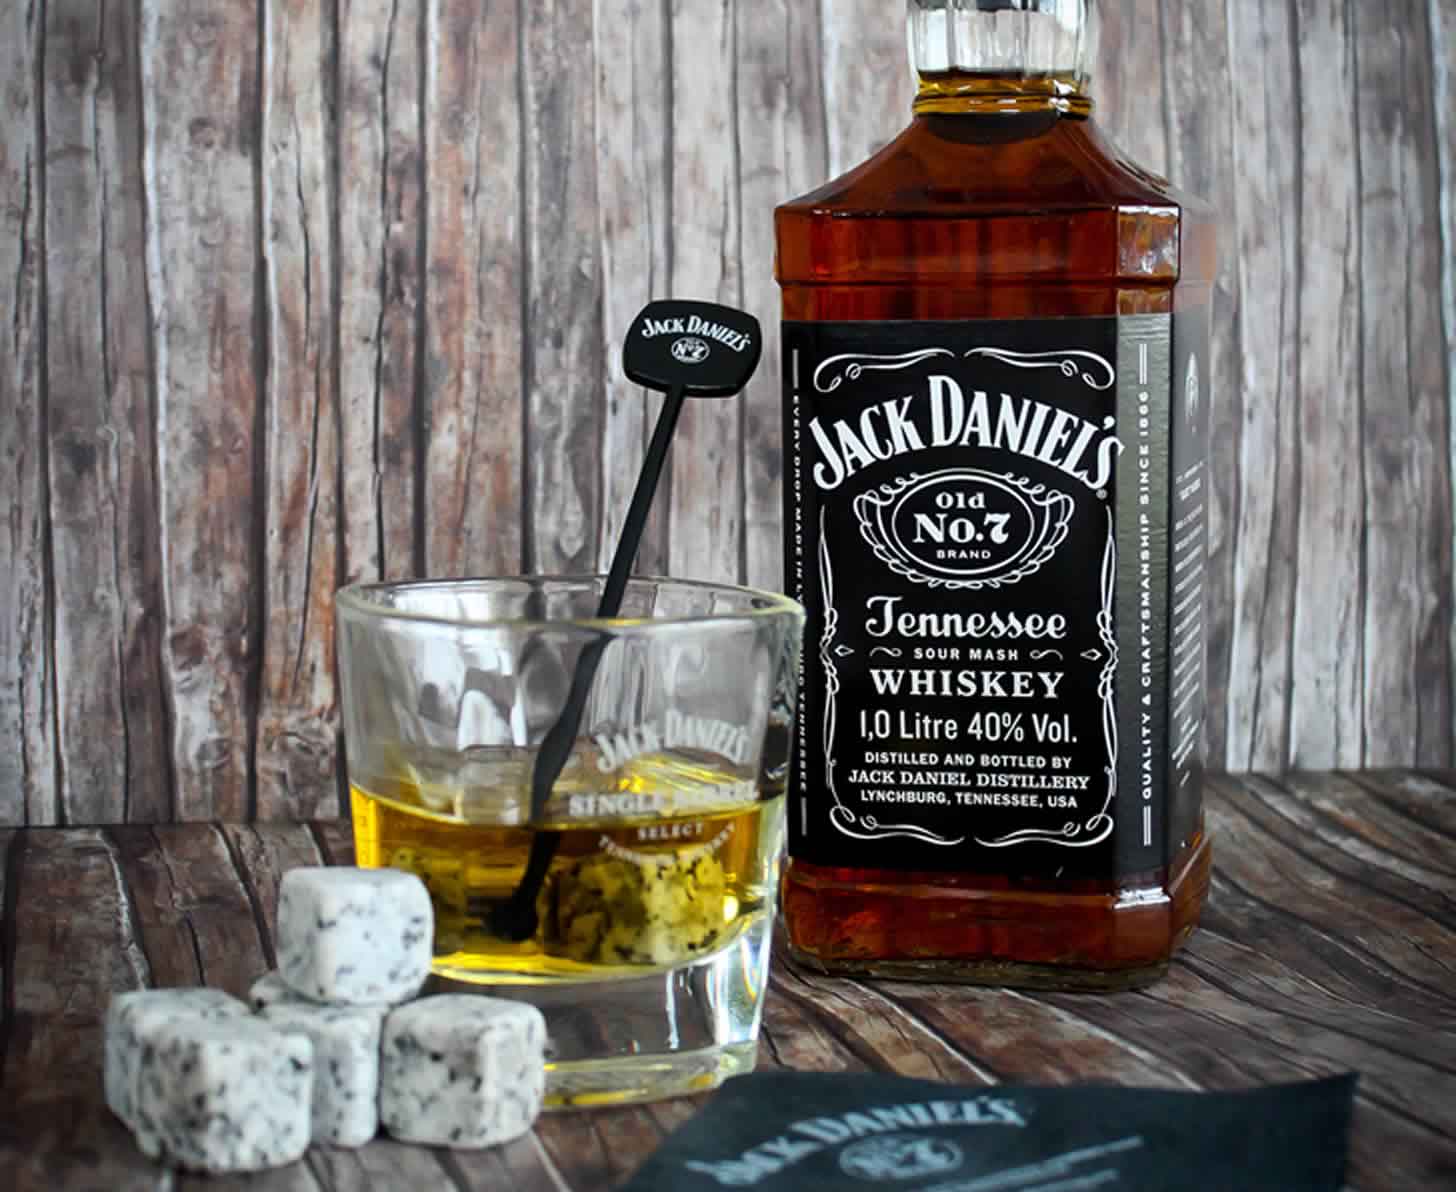 Jack daniels подделка: лучшая статья (24 фото бутылок), 100% способ